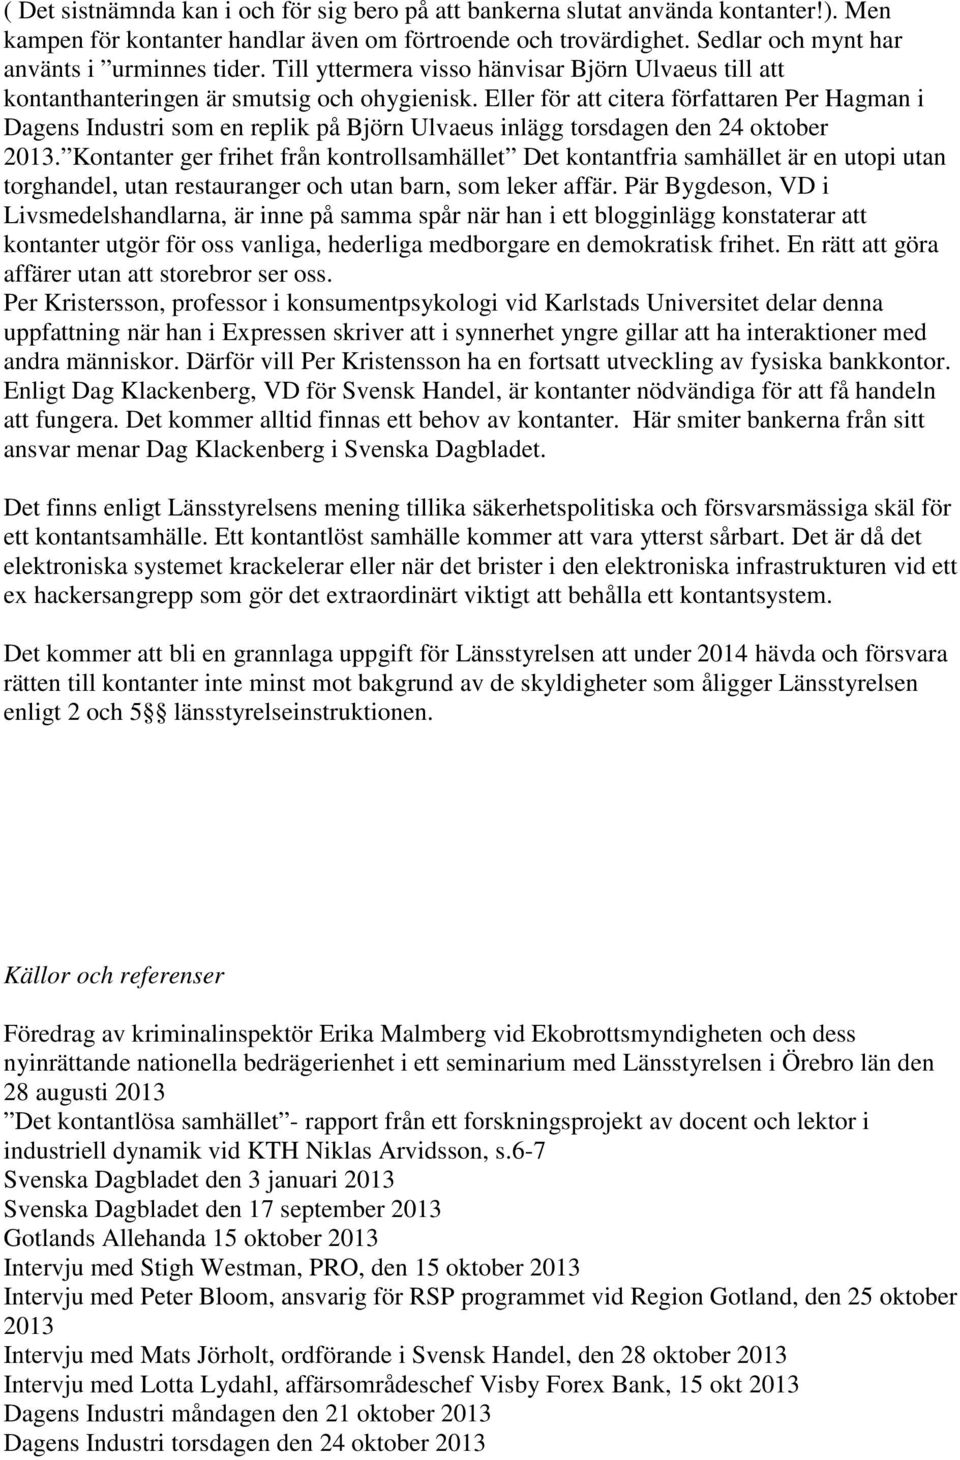 Eller för att citera författaren Per Hagman i Dagens Industri som en replik på Björn Ulvaeus inlägg torsdagen den 24 oktober 2013.